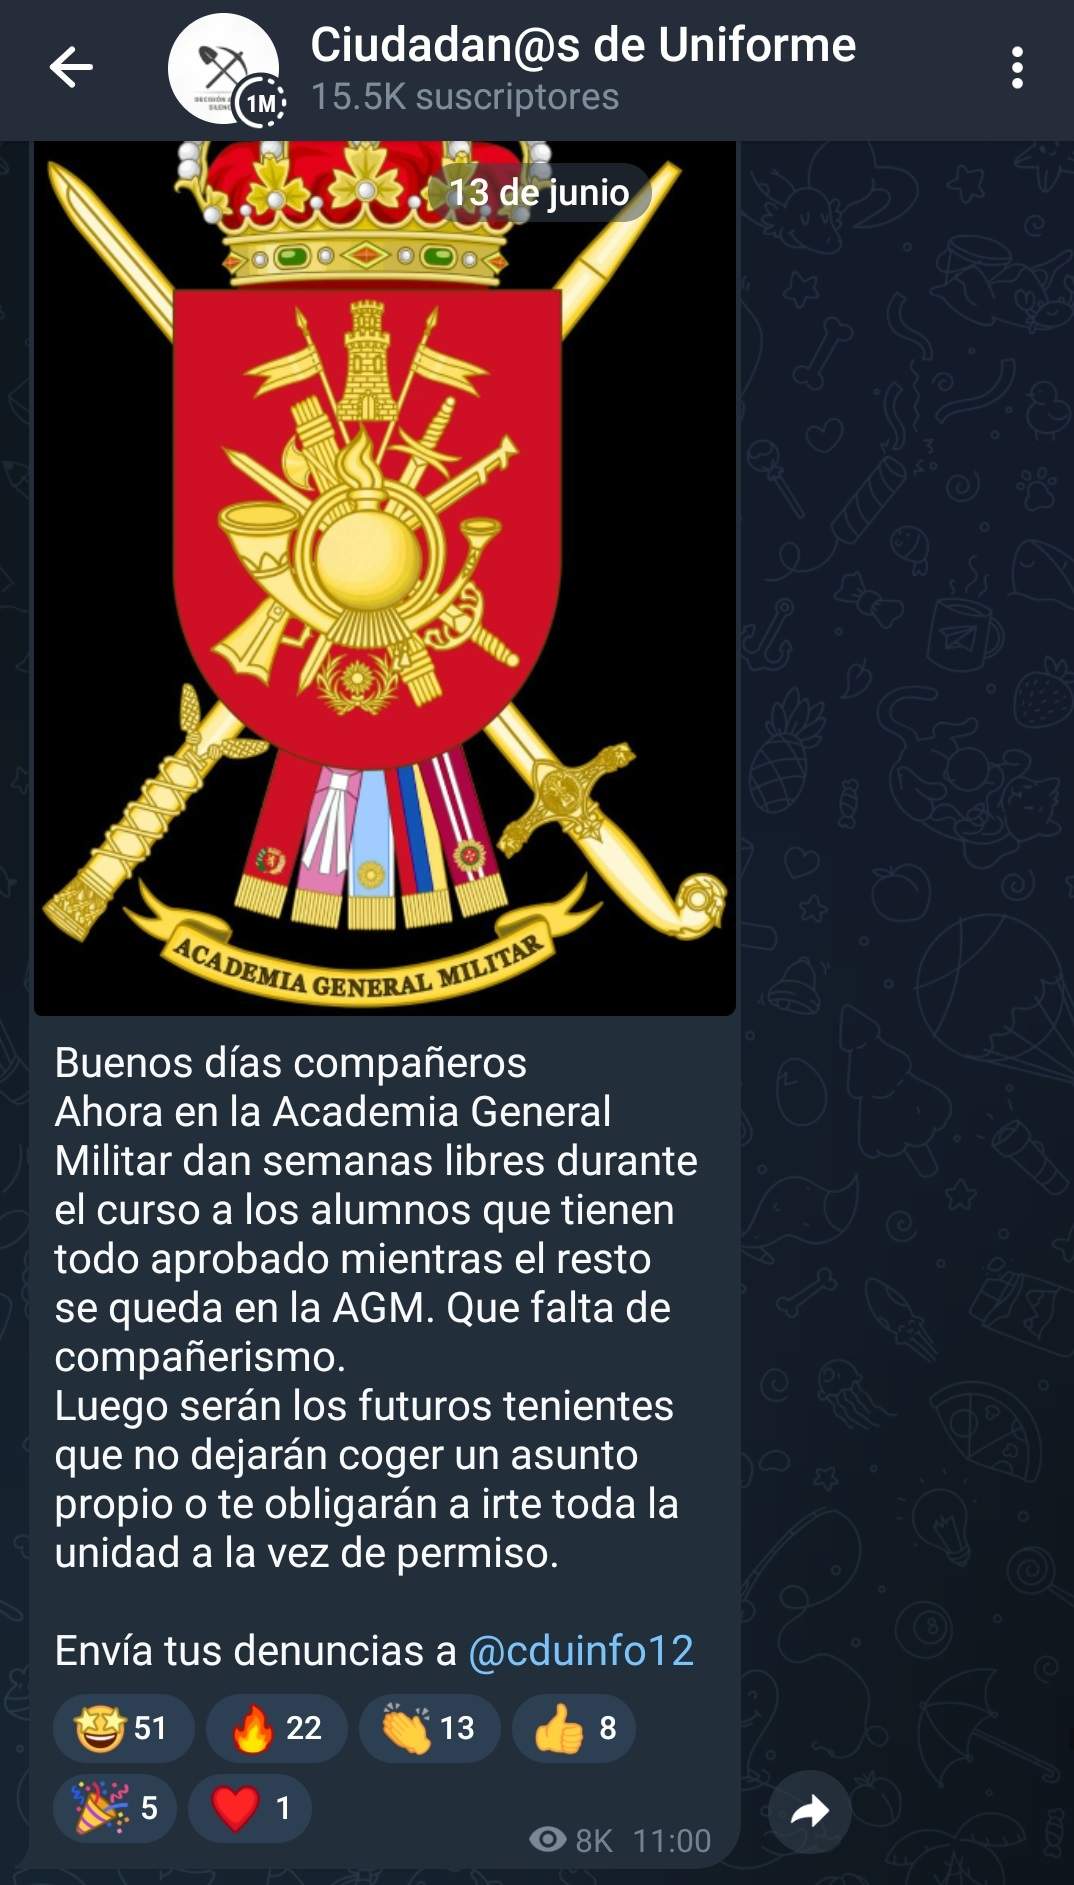 Mensaje en 'Ciudadanos de Uniforme' sobre la Academia General Militar.